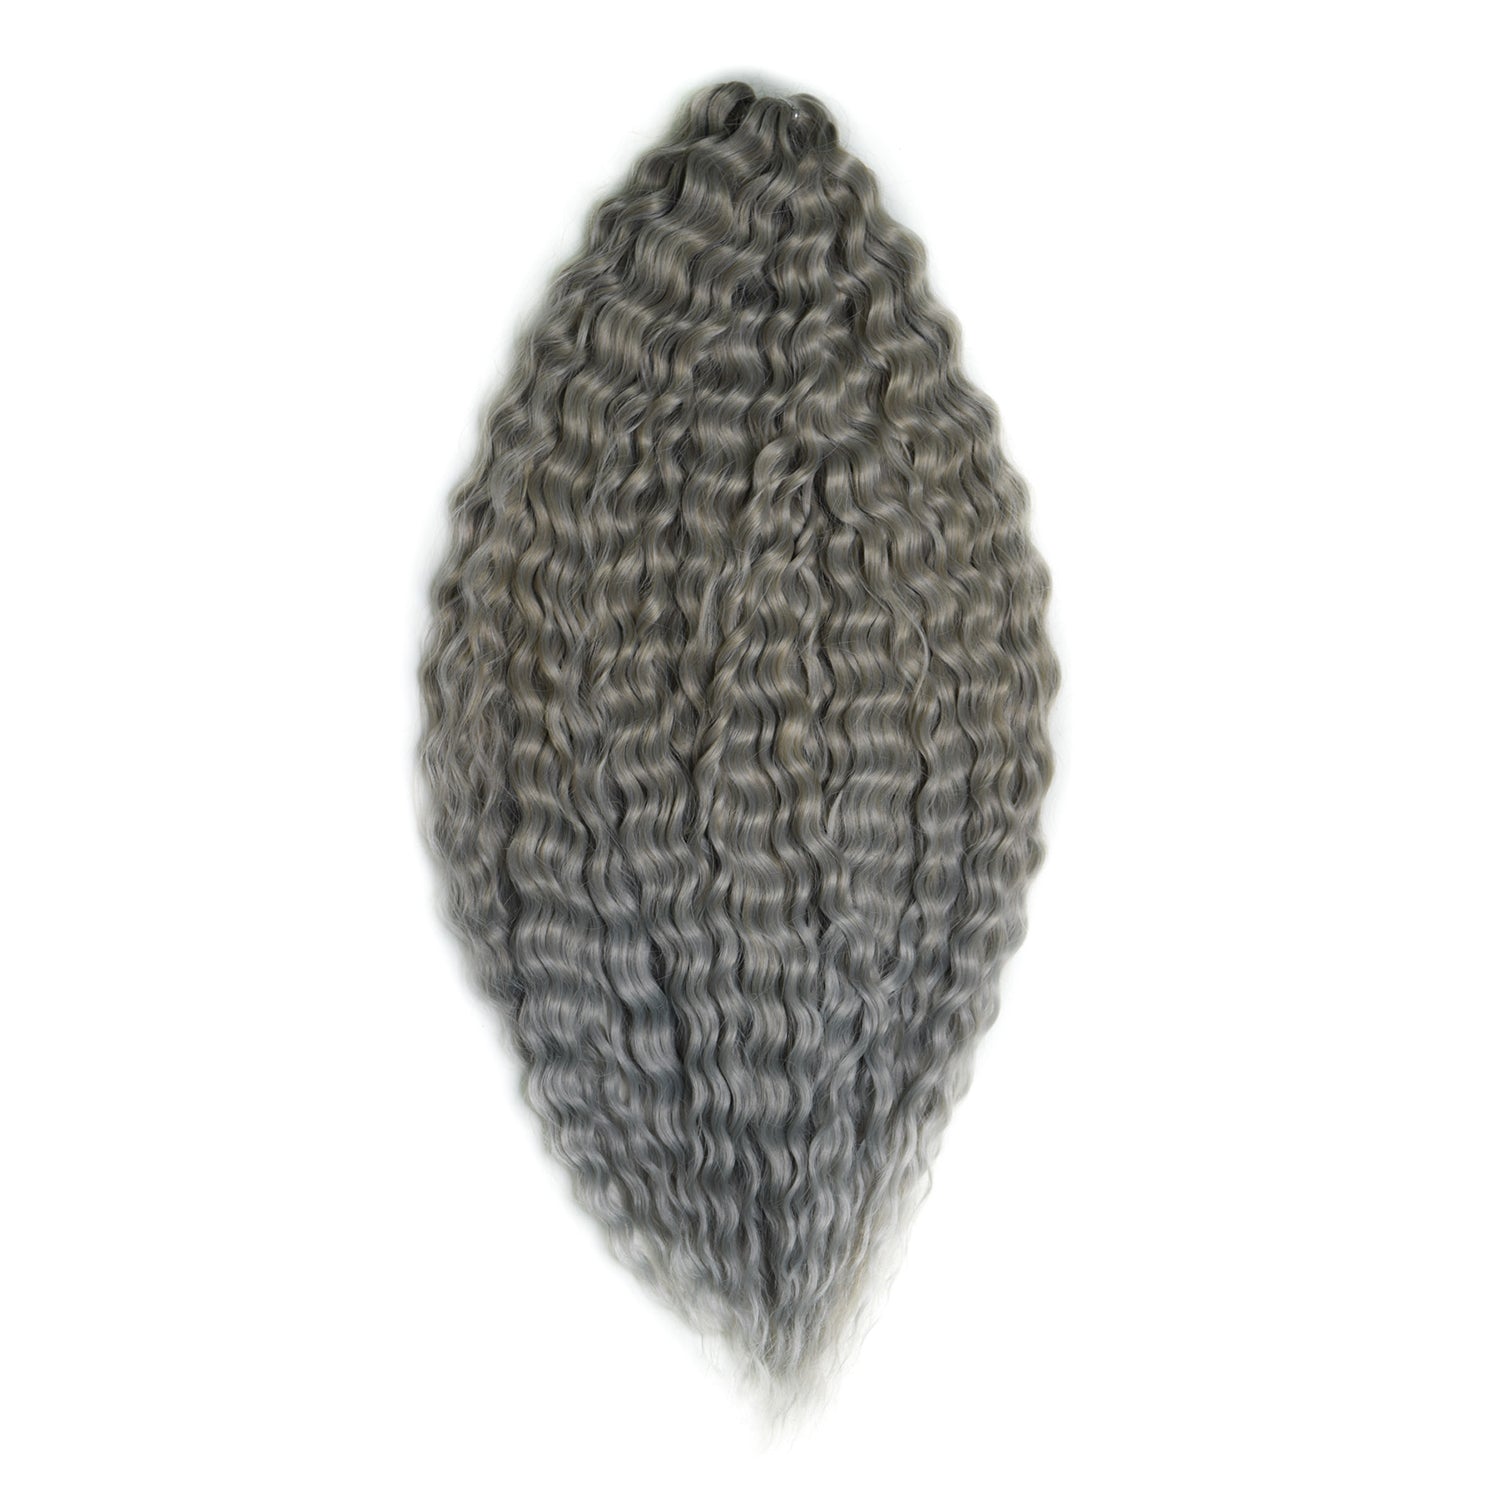 Афрокудри для плетения волос Ariel цвет T16 60A Cерый длина 55см вес 300г проволока для плетения d 1 5мм намотка 5м